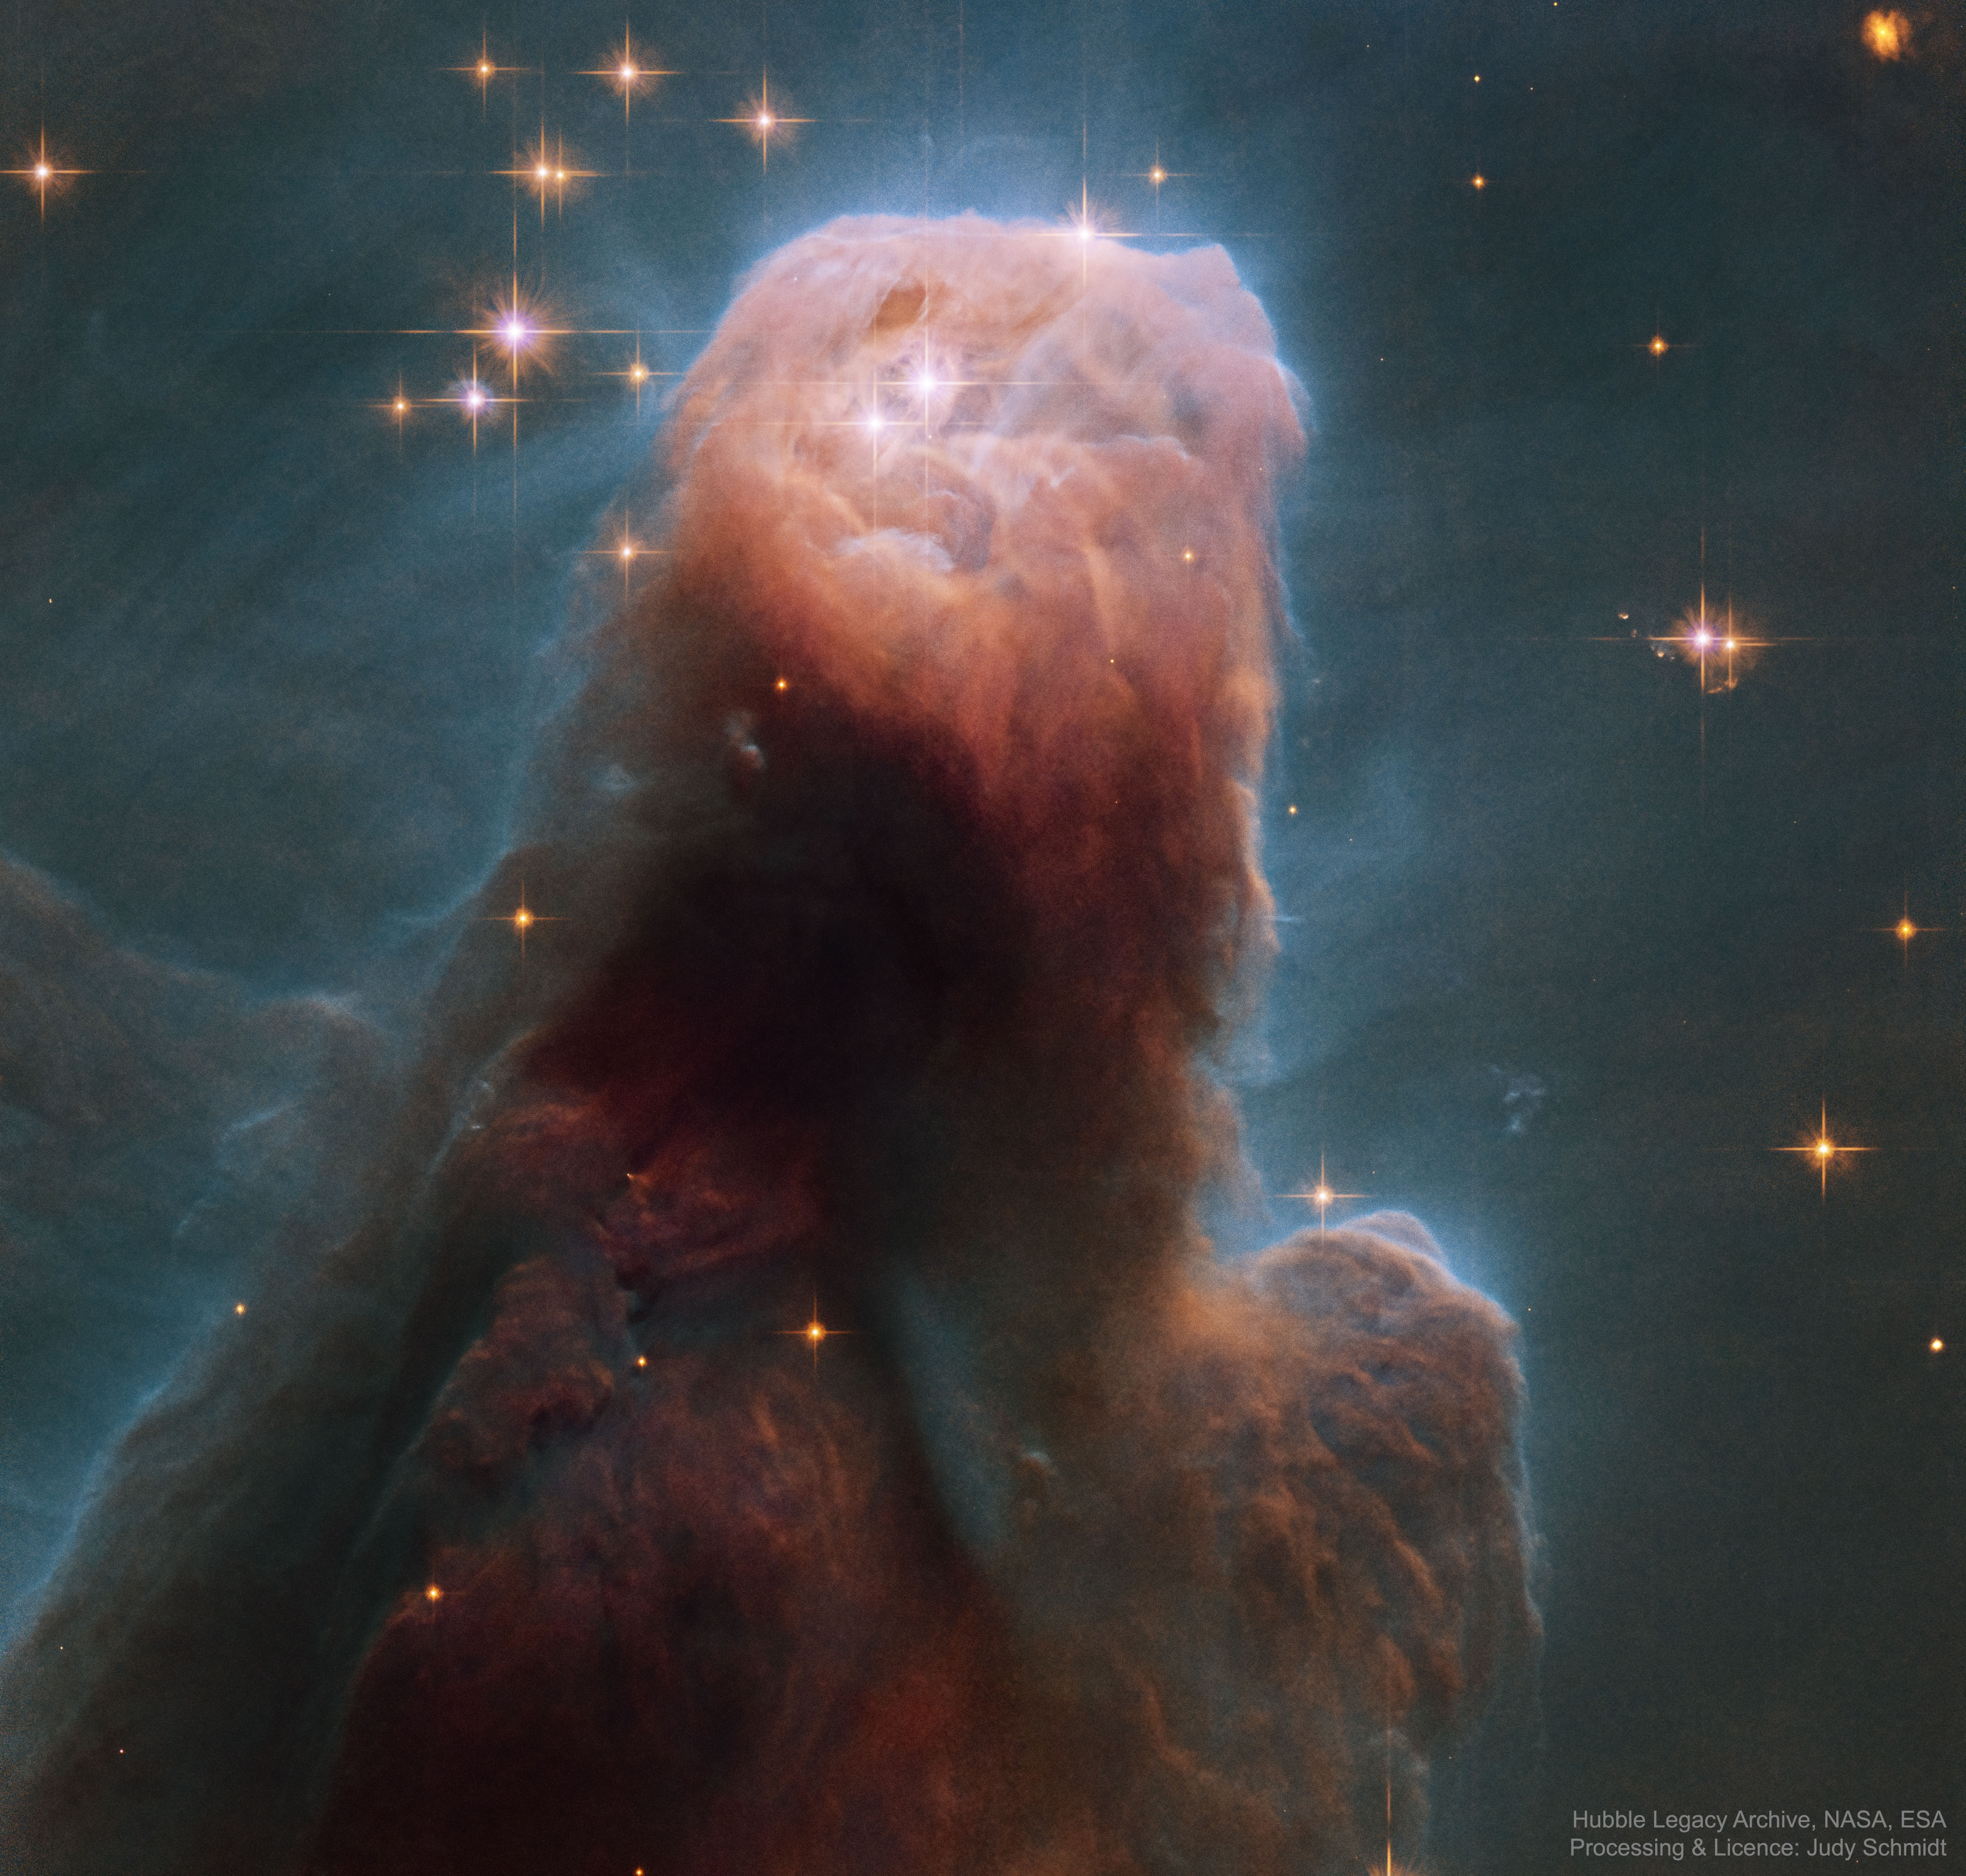 La nebulosa del Cono desde el Hubble